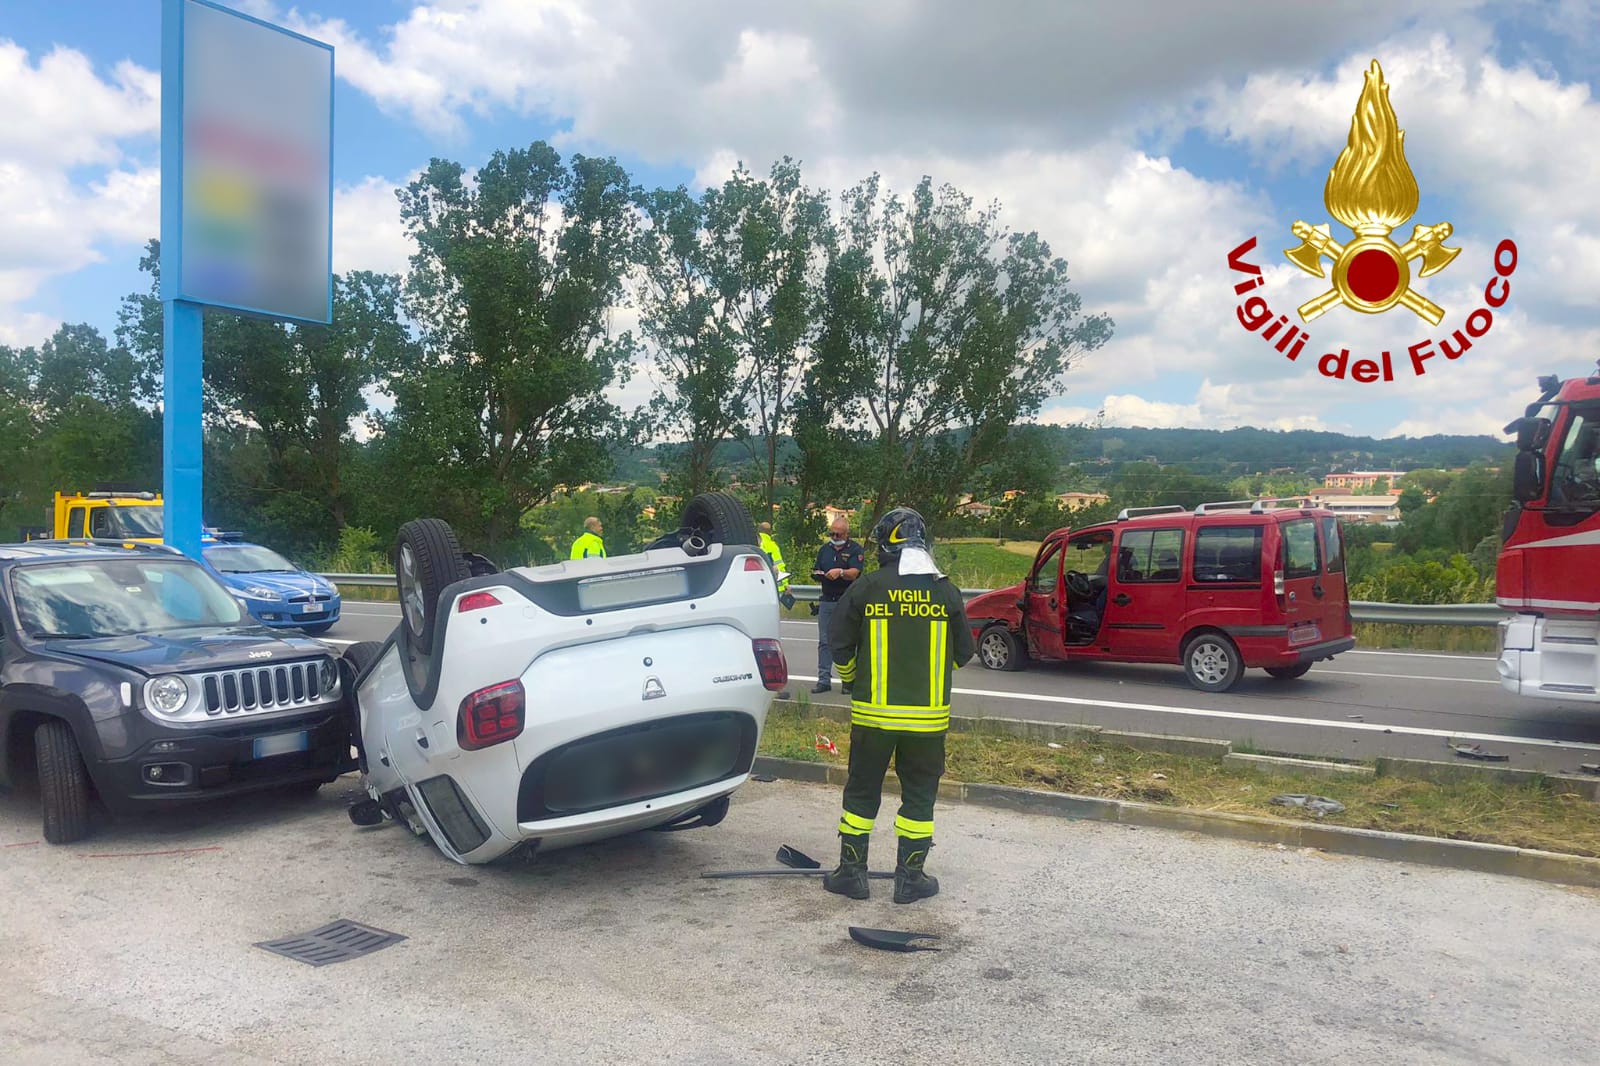 Lioni| Incidente in un’area di servizio: 3 auto a contatto, una si ribalta, 2 i feriti